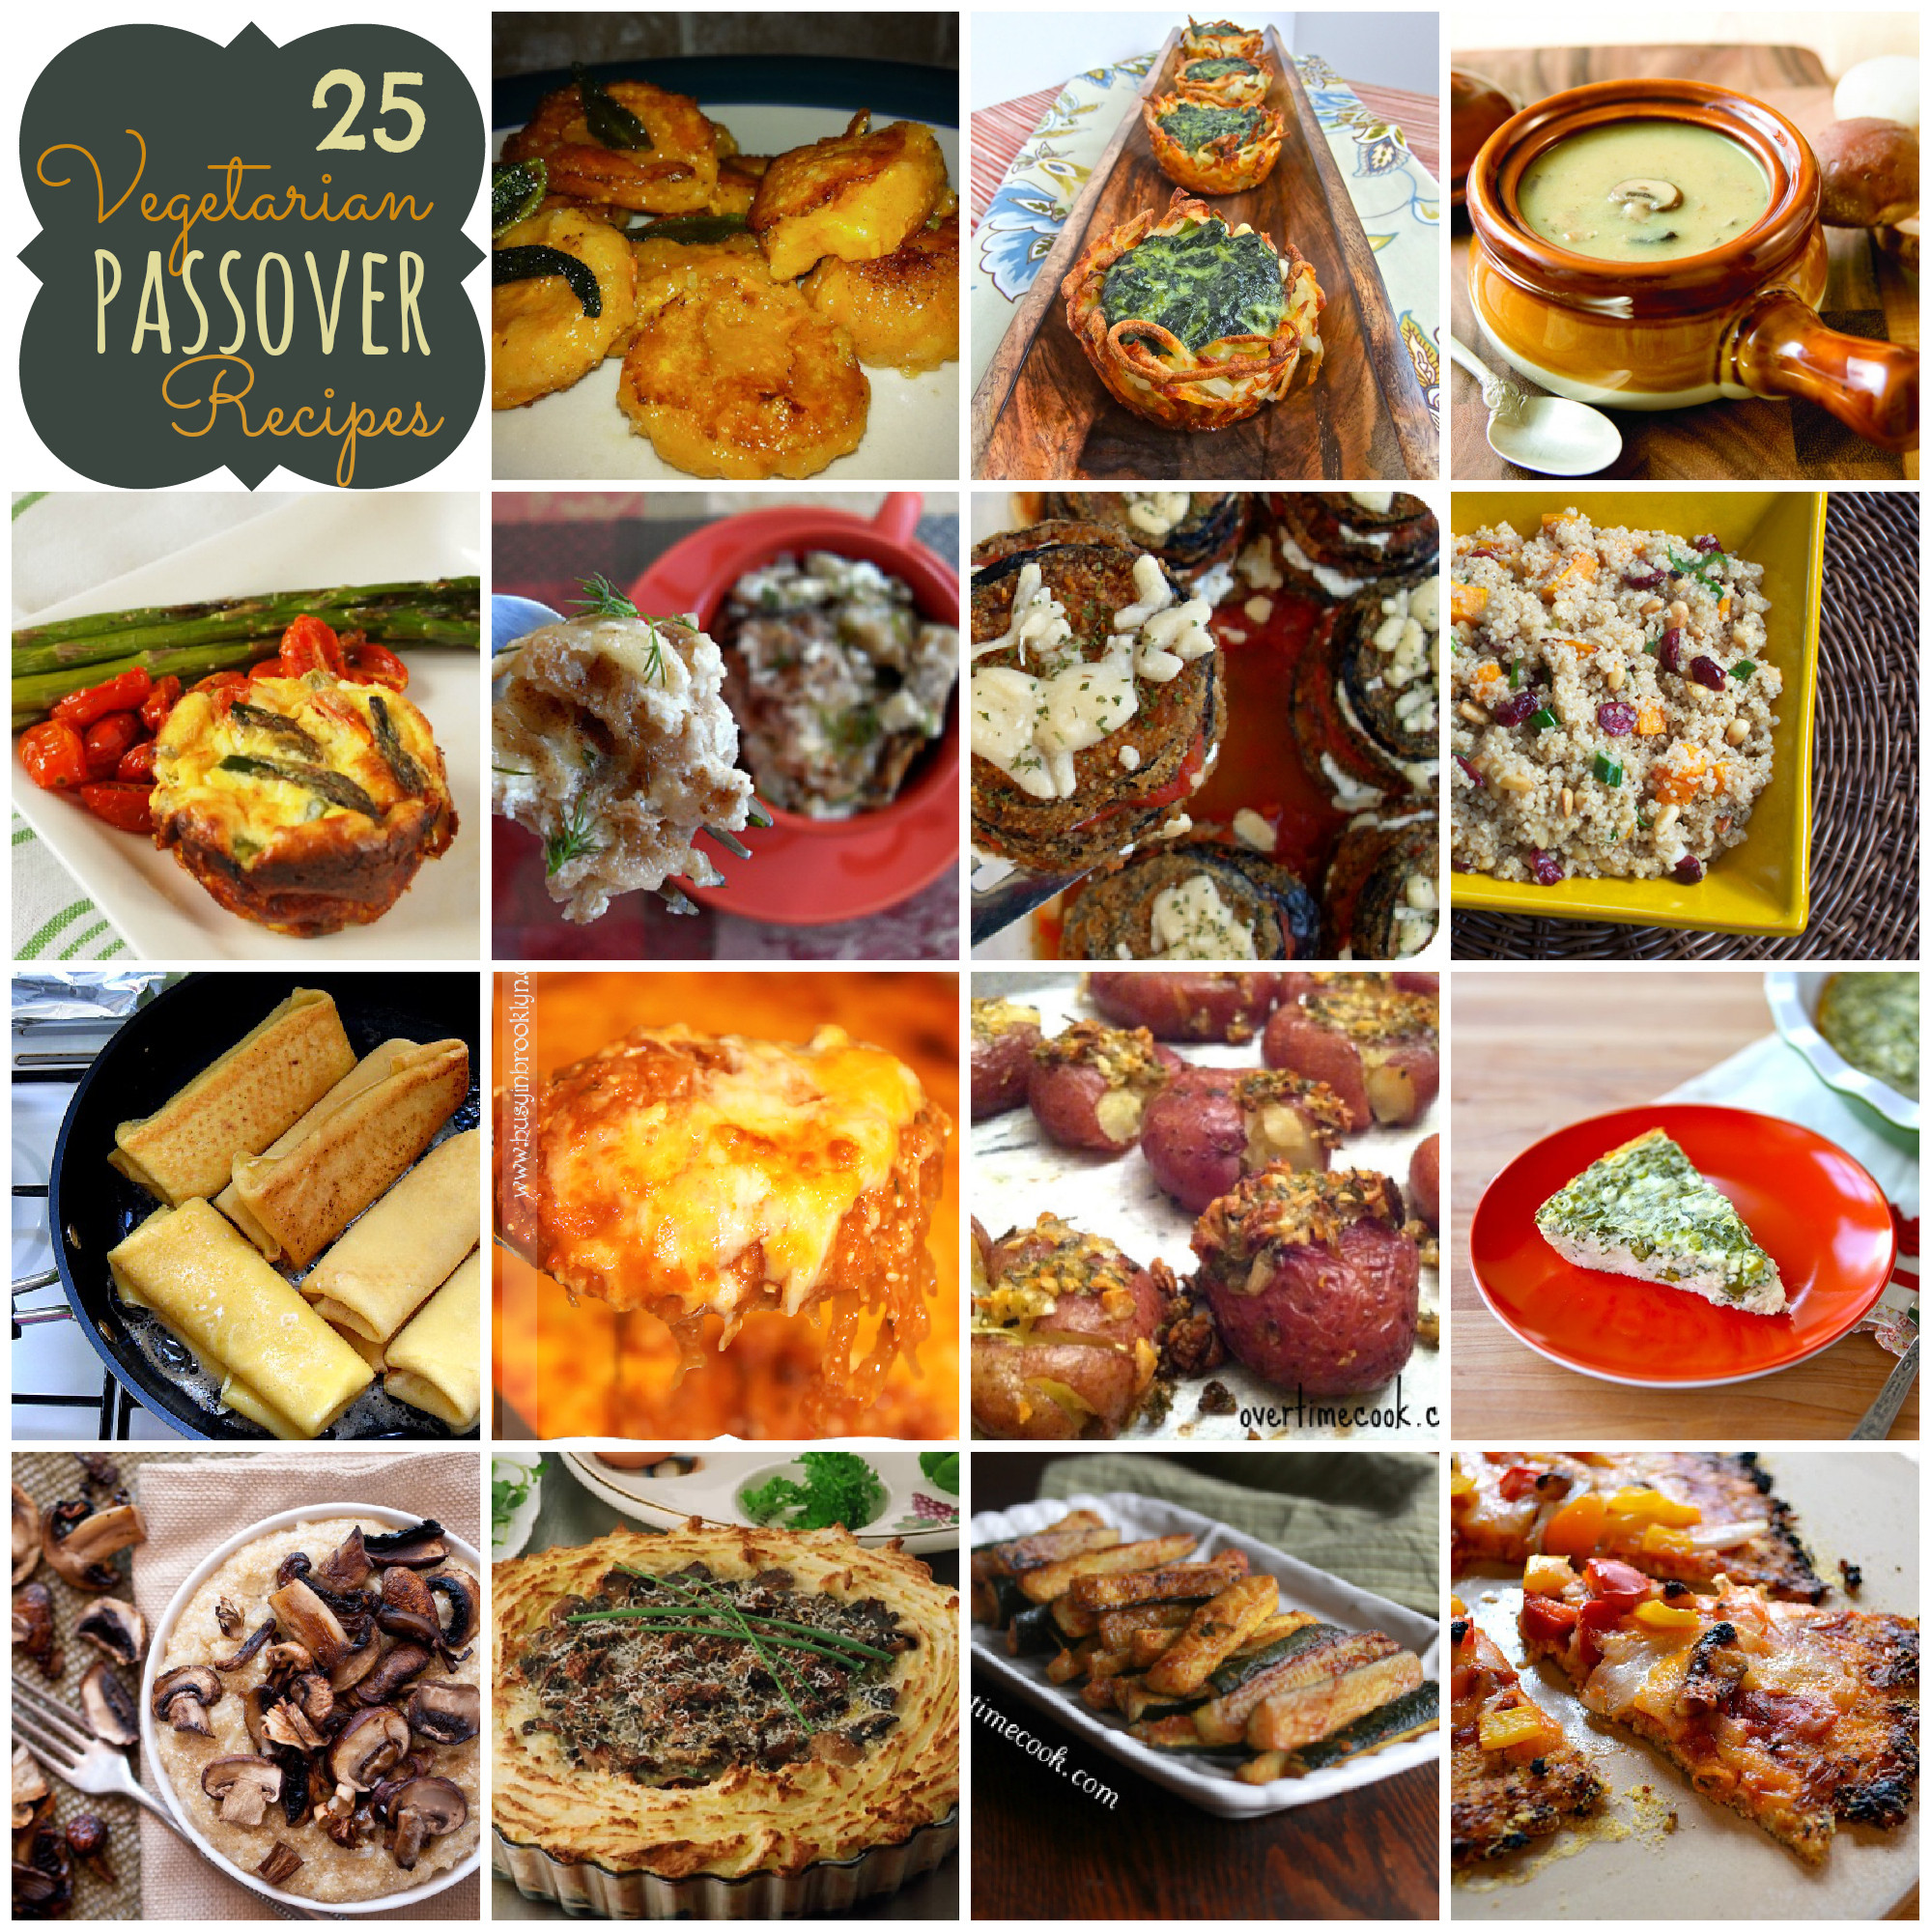 Passover Dinner Menus
 25 Ve arian Passover Recipes